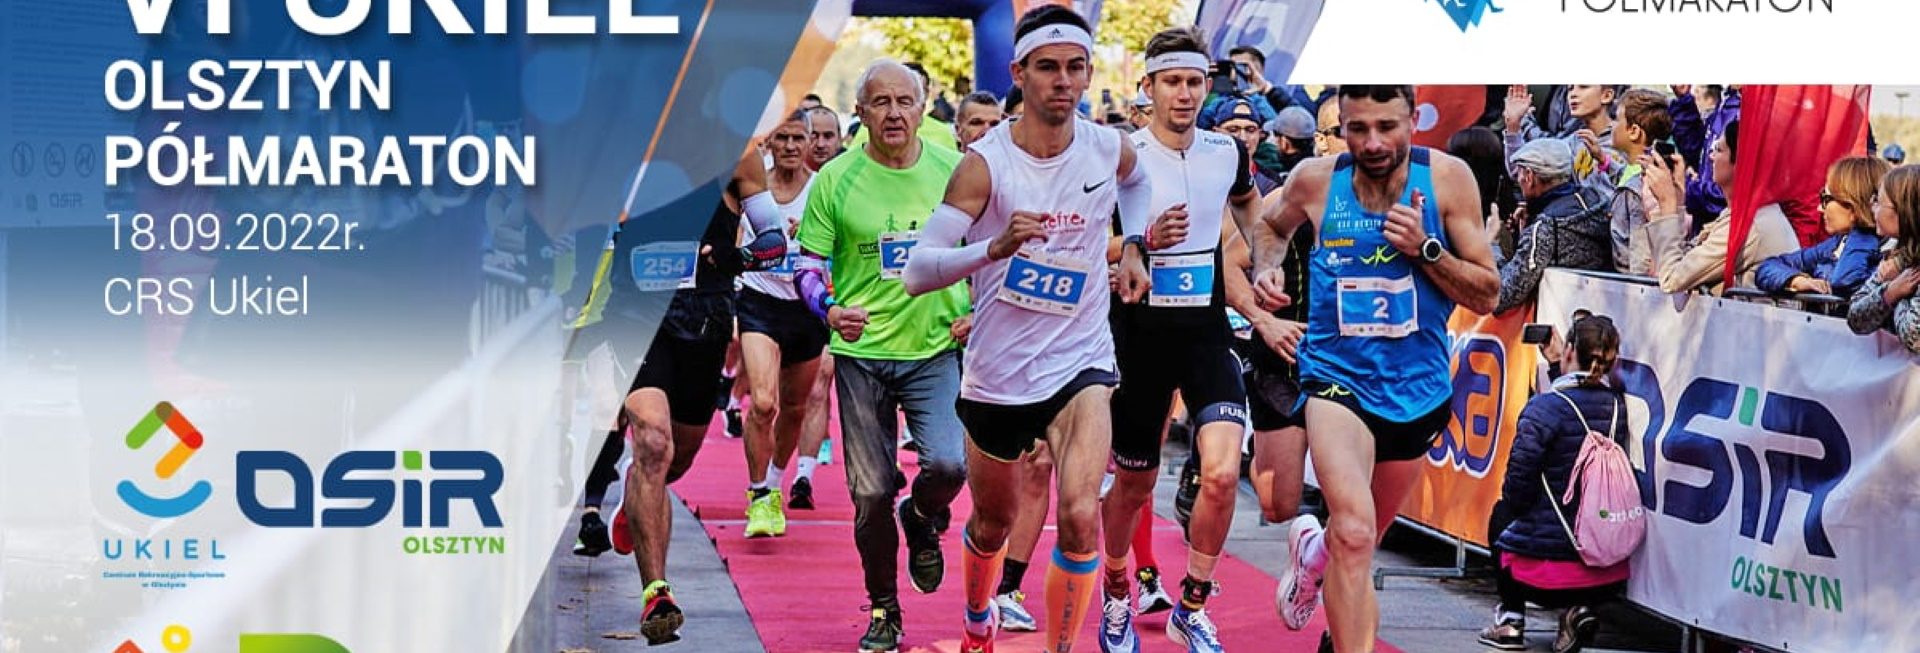 Plakat zapraszający do Olsztyna na 6. edycję Biegu Półmaraton Ukiel Olsztyn 2022.